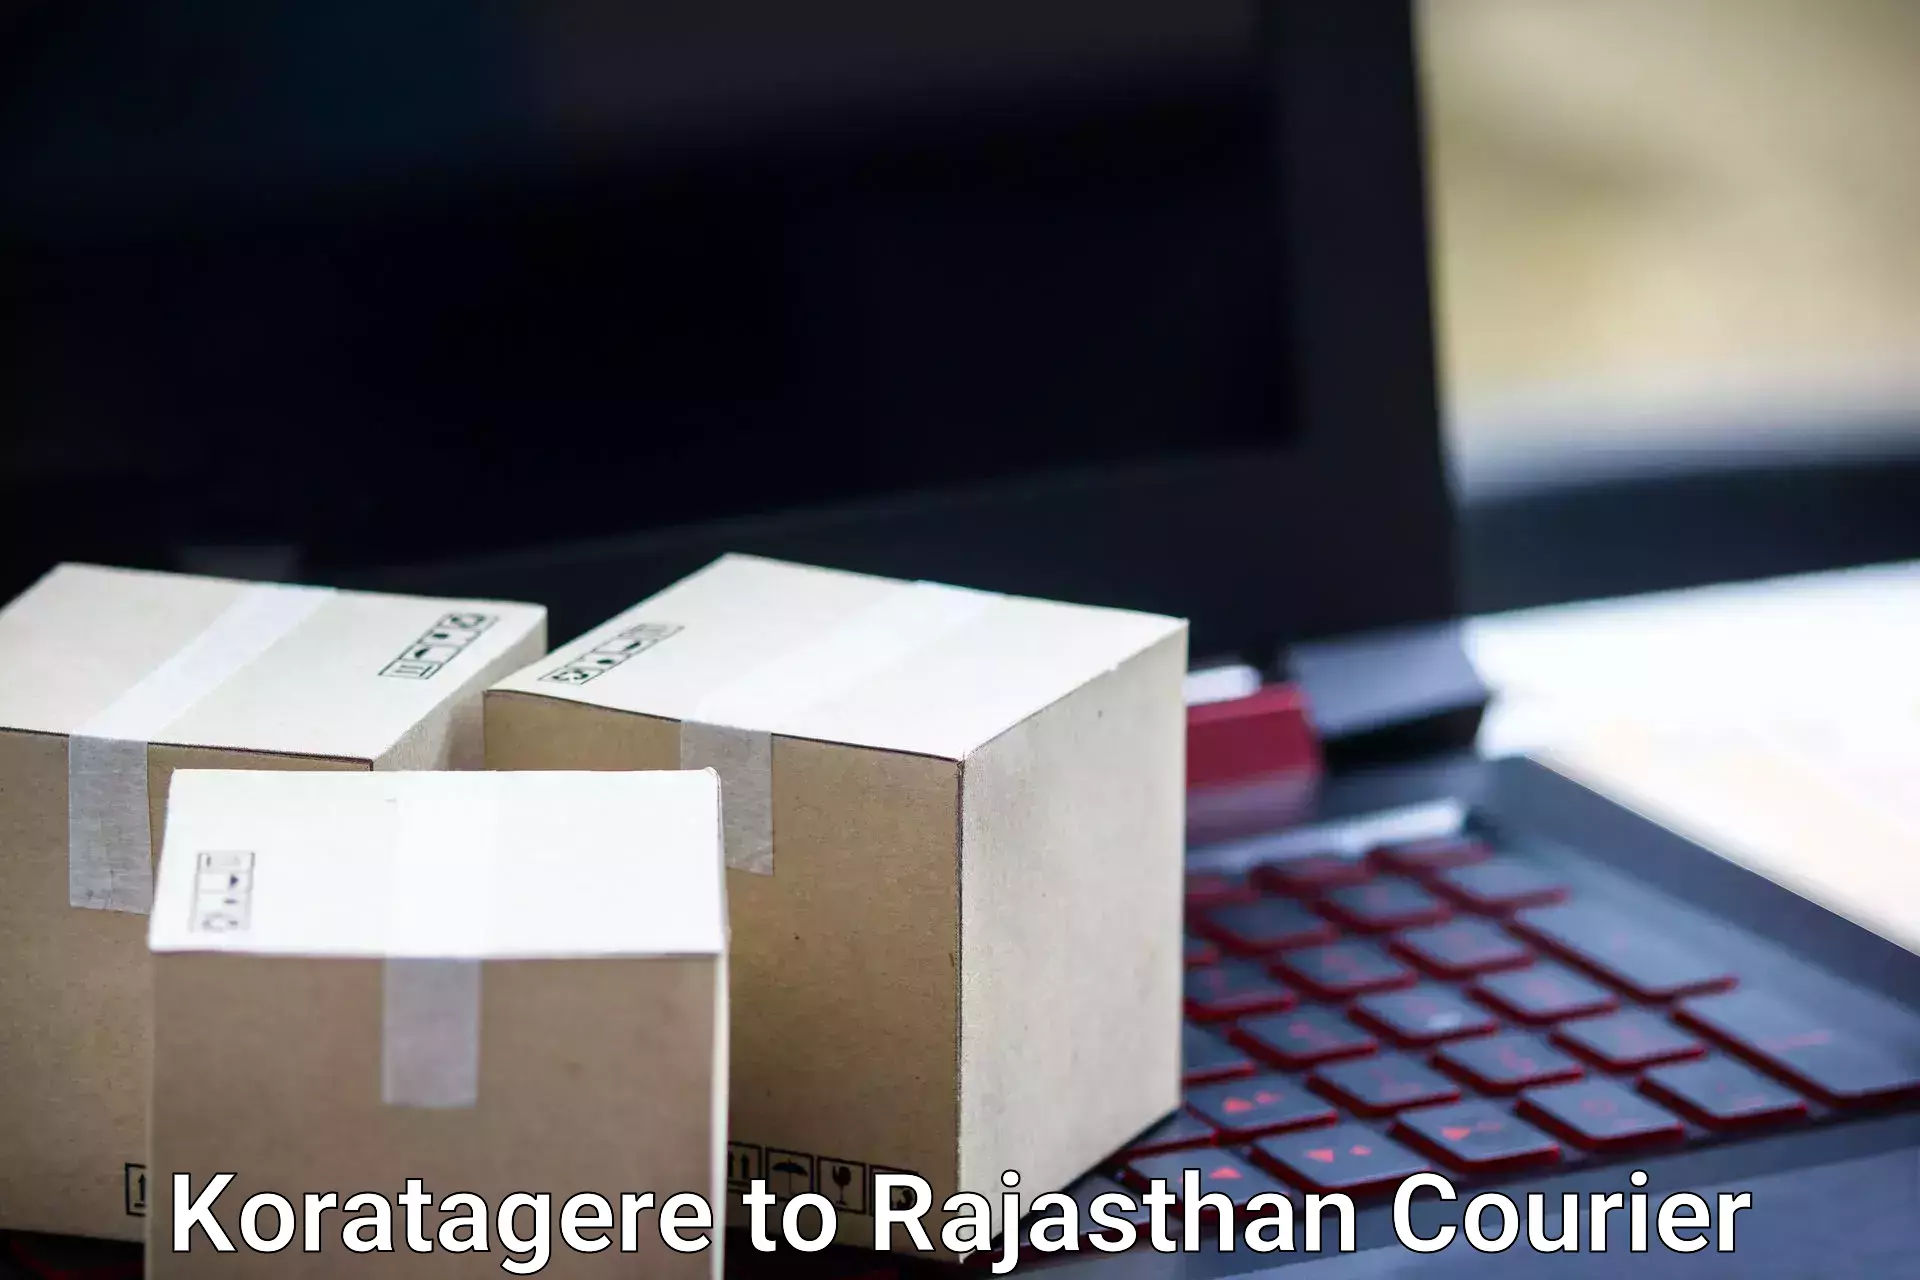 Luggage transit service Koratagere to Rajasthan